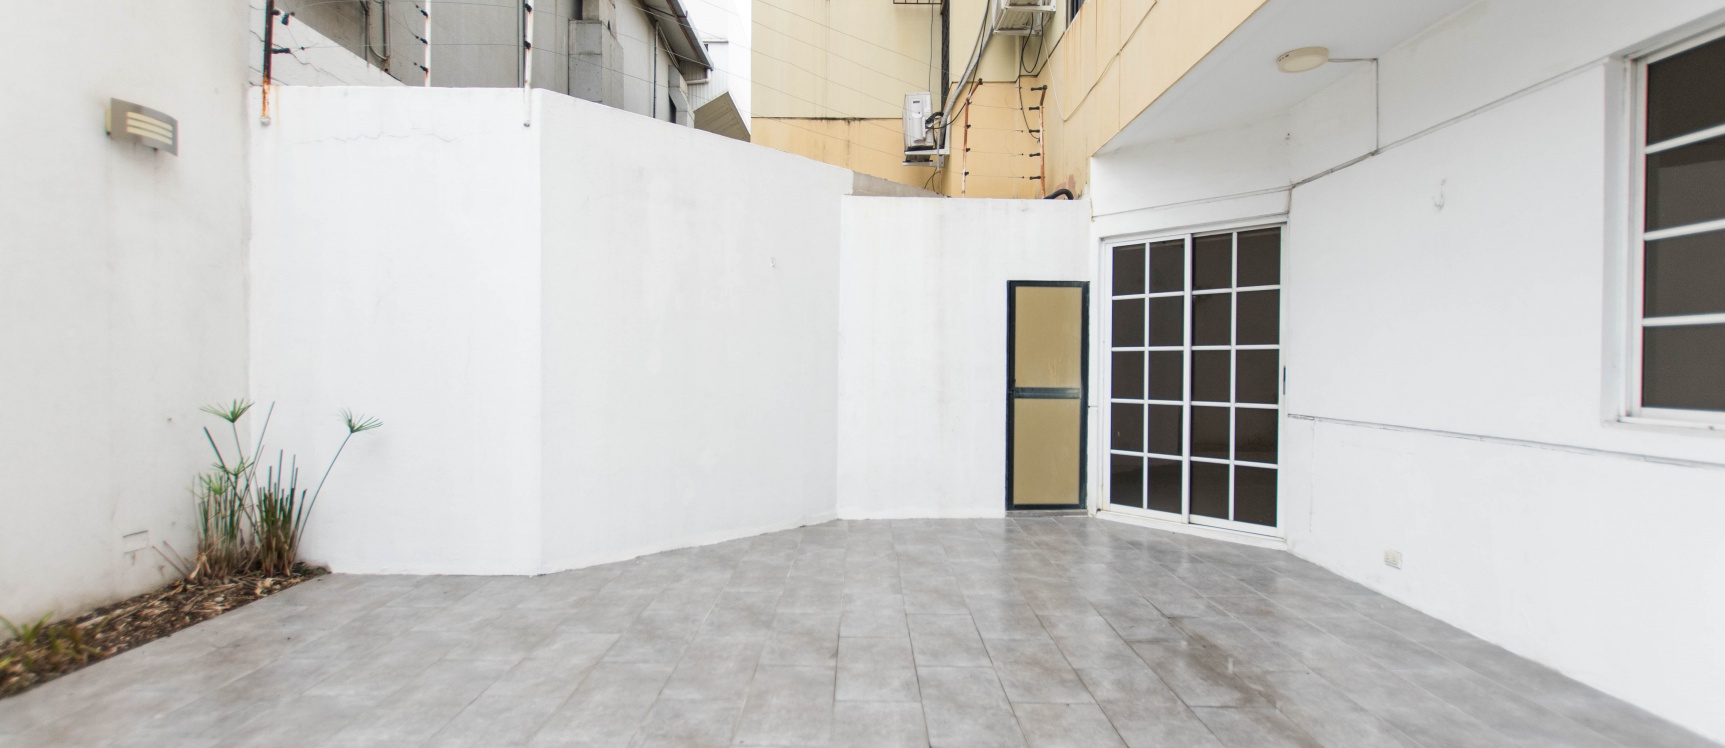 GeoBienes - Departamento en venta (planta baja) ubicado en el km 5 Via Samborondón - Plusvalia Guayaquil Casas de venta y alquiler Inmobiliaria Ecuador